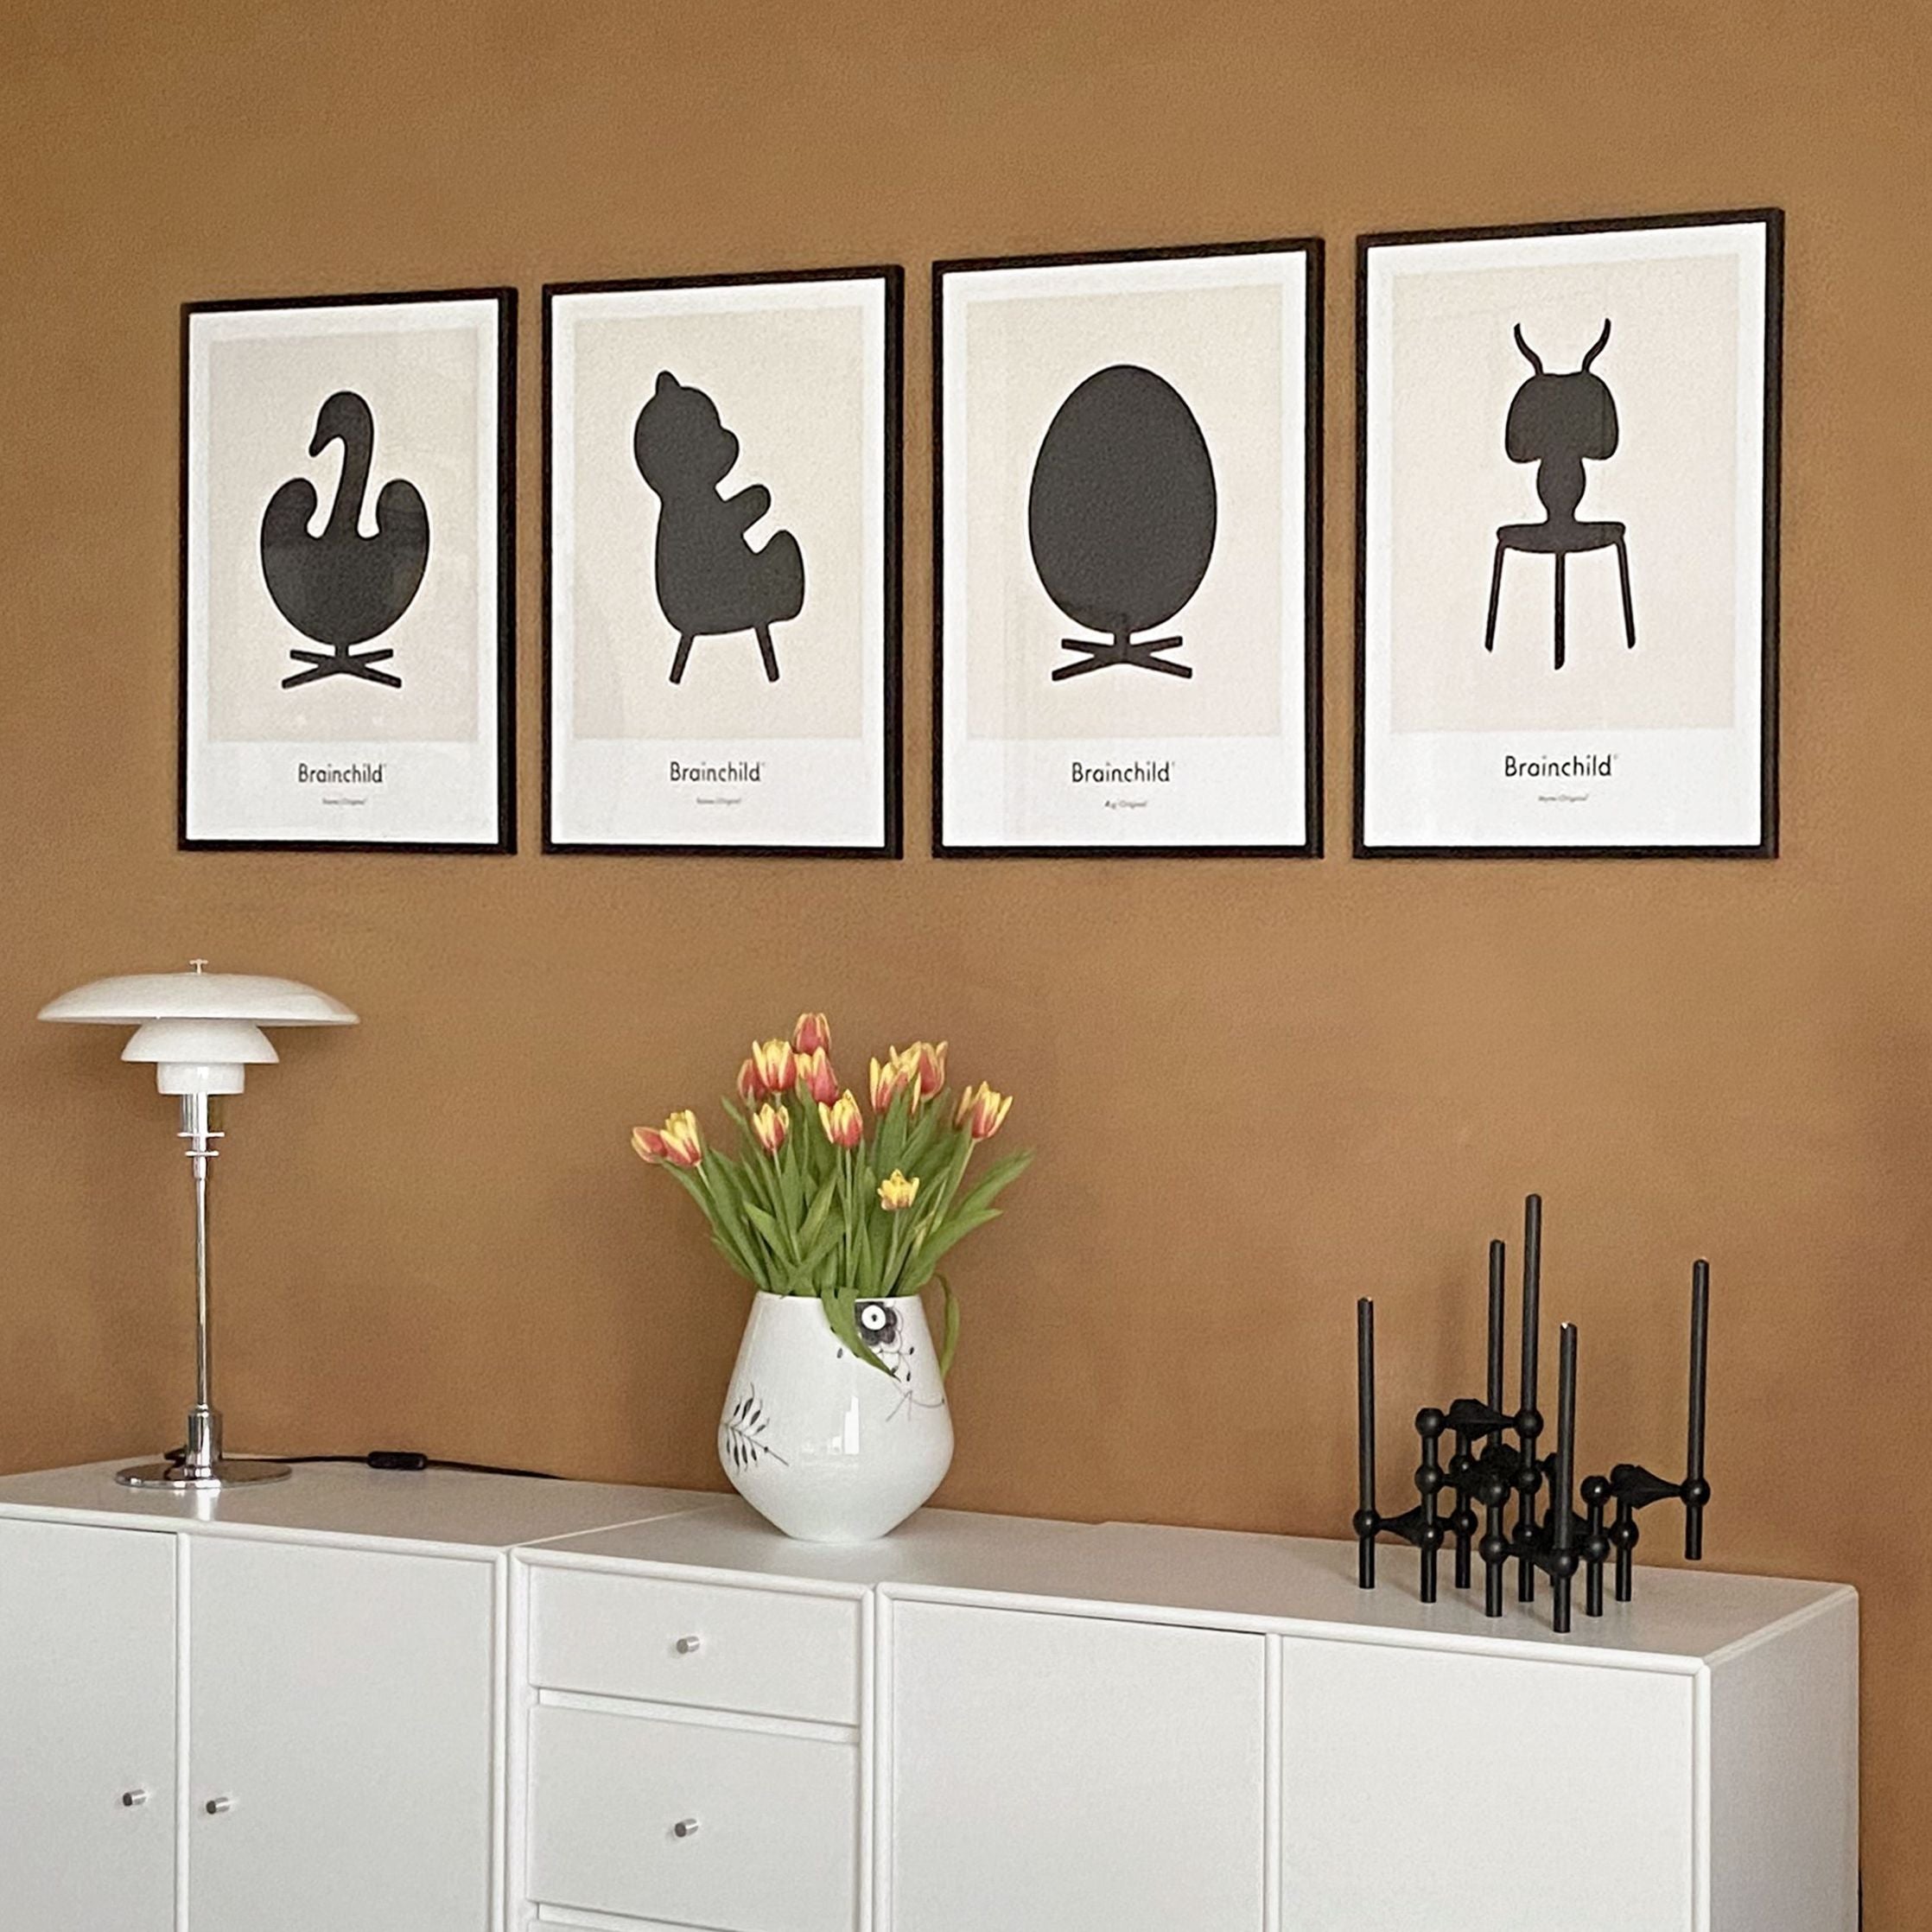 Brainchild Swan Design Icon Poster zonder frame A5, grijs